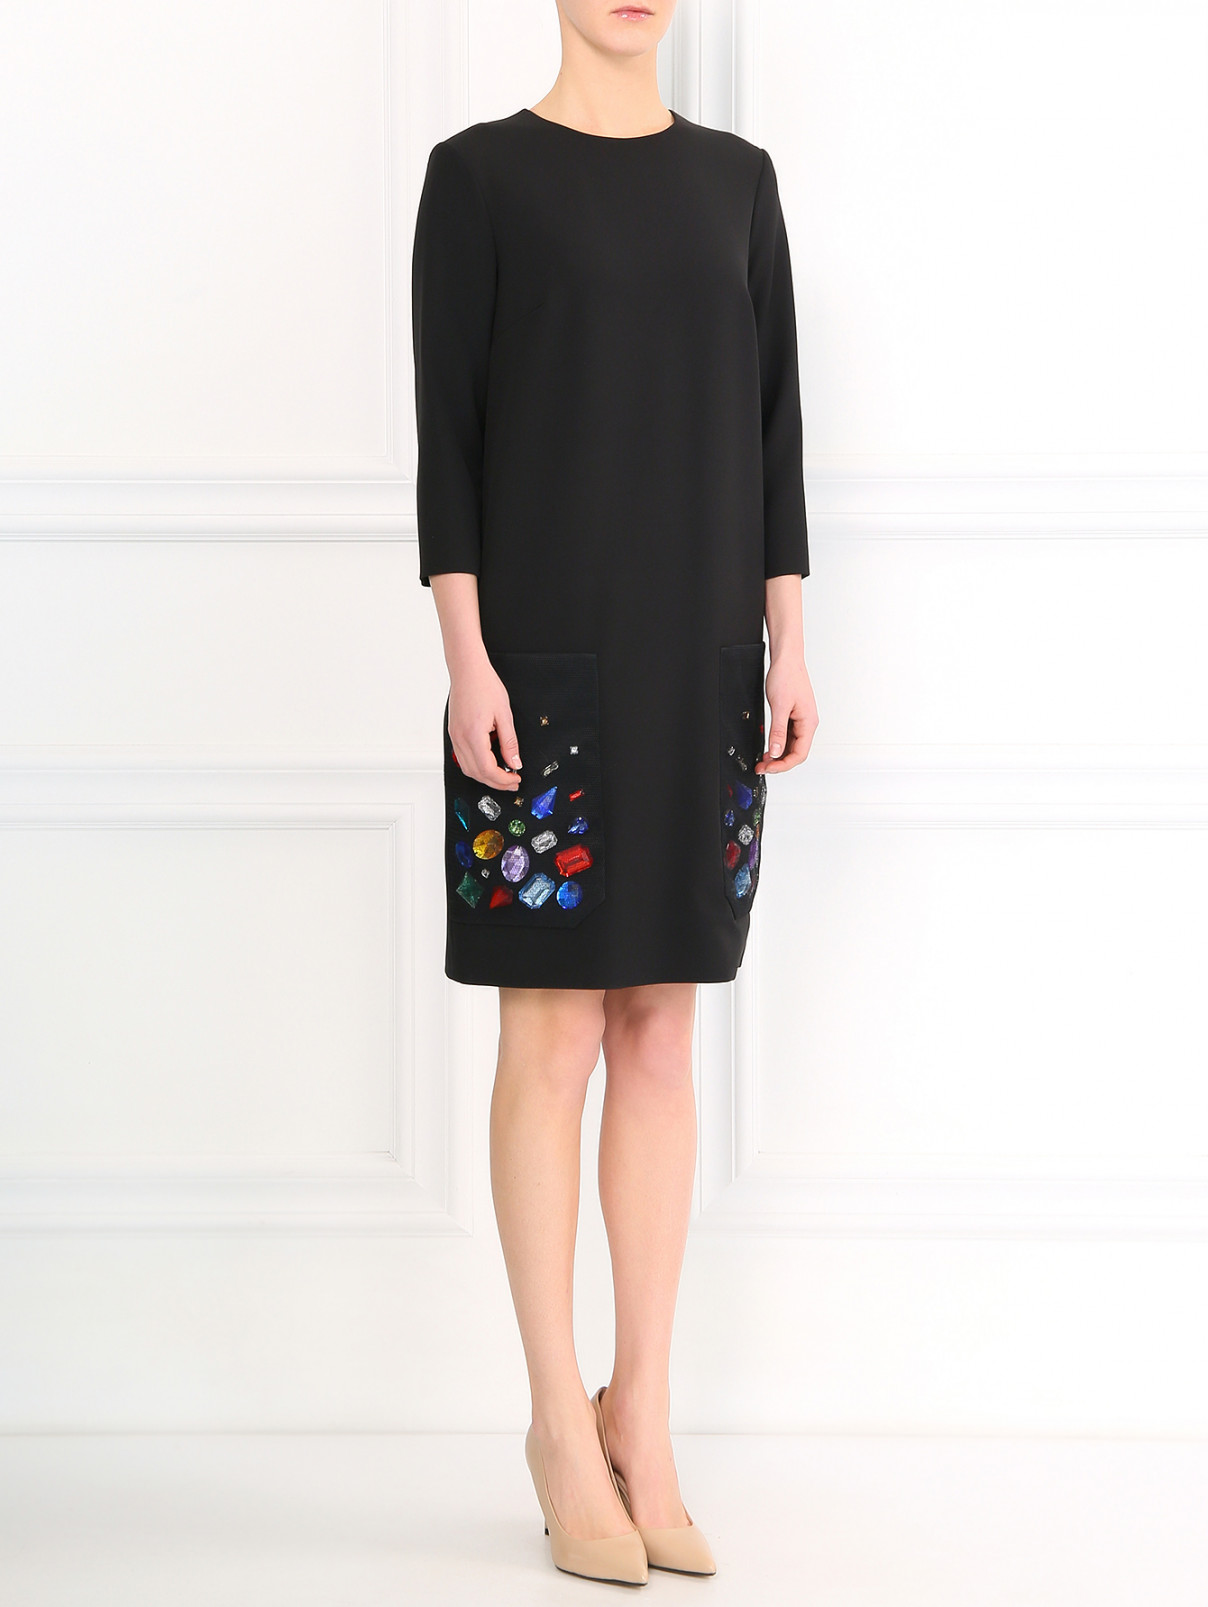 Платье-мини, декорированное кристаллами A La Russe  –  Модель Общий вид  – Цвет:  Черный